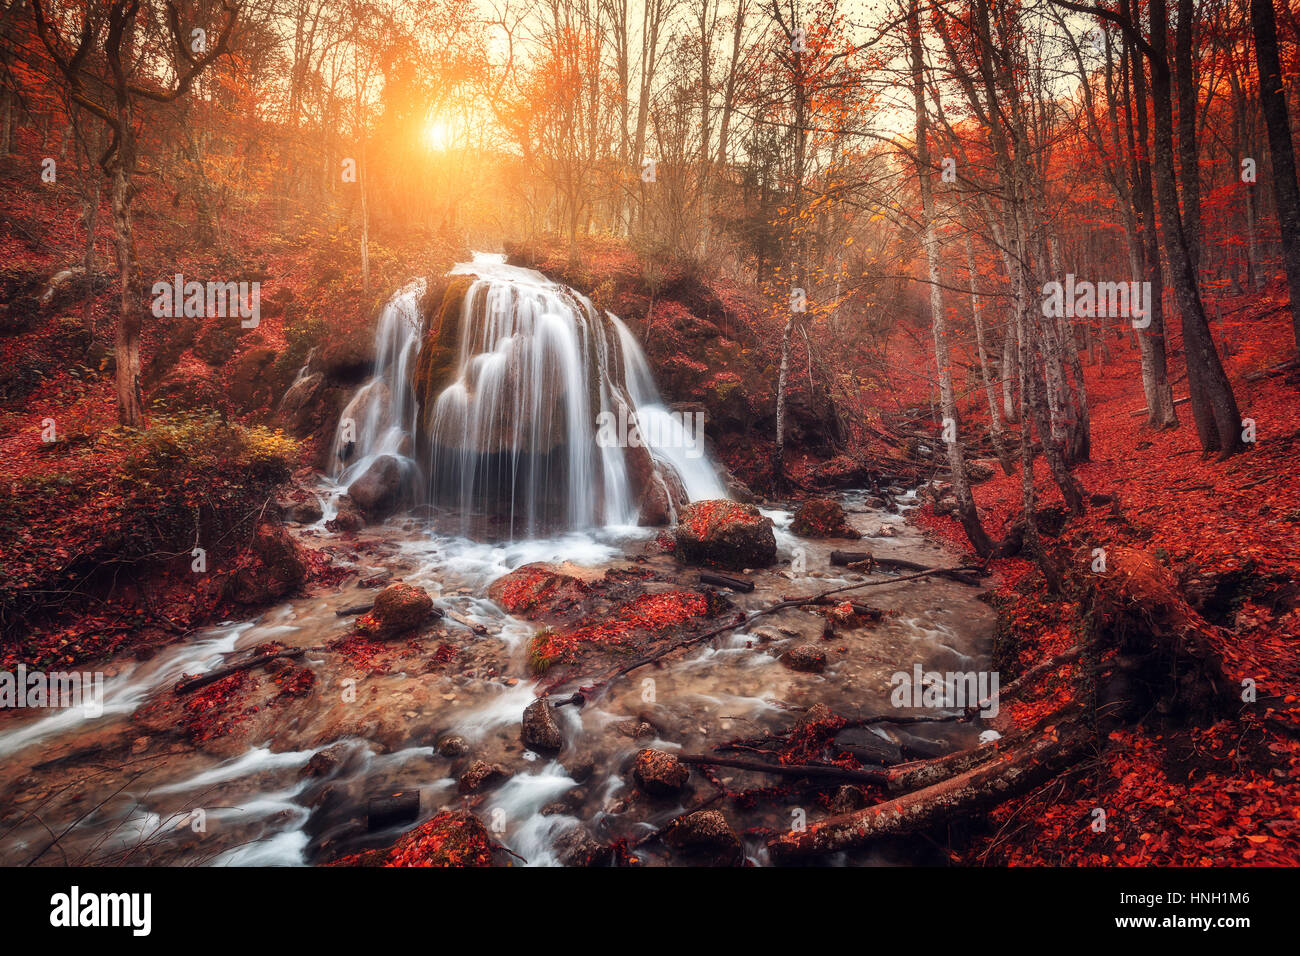 Cascata. Paesaggio colorato con bella cascata al fiume di montagna nella foresta con fogliame rosso al tramonto in autunno. Alberi con foglie rosse. St Foto Stock